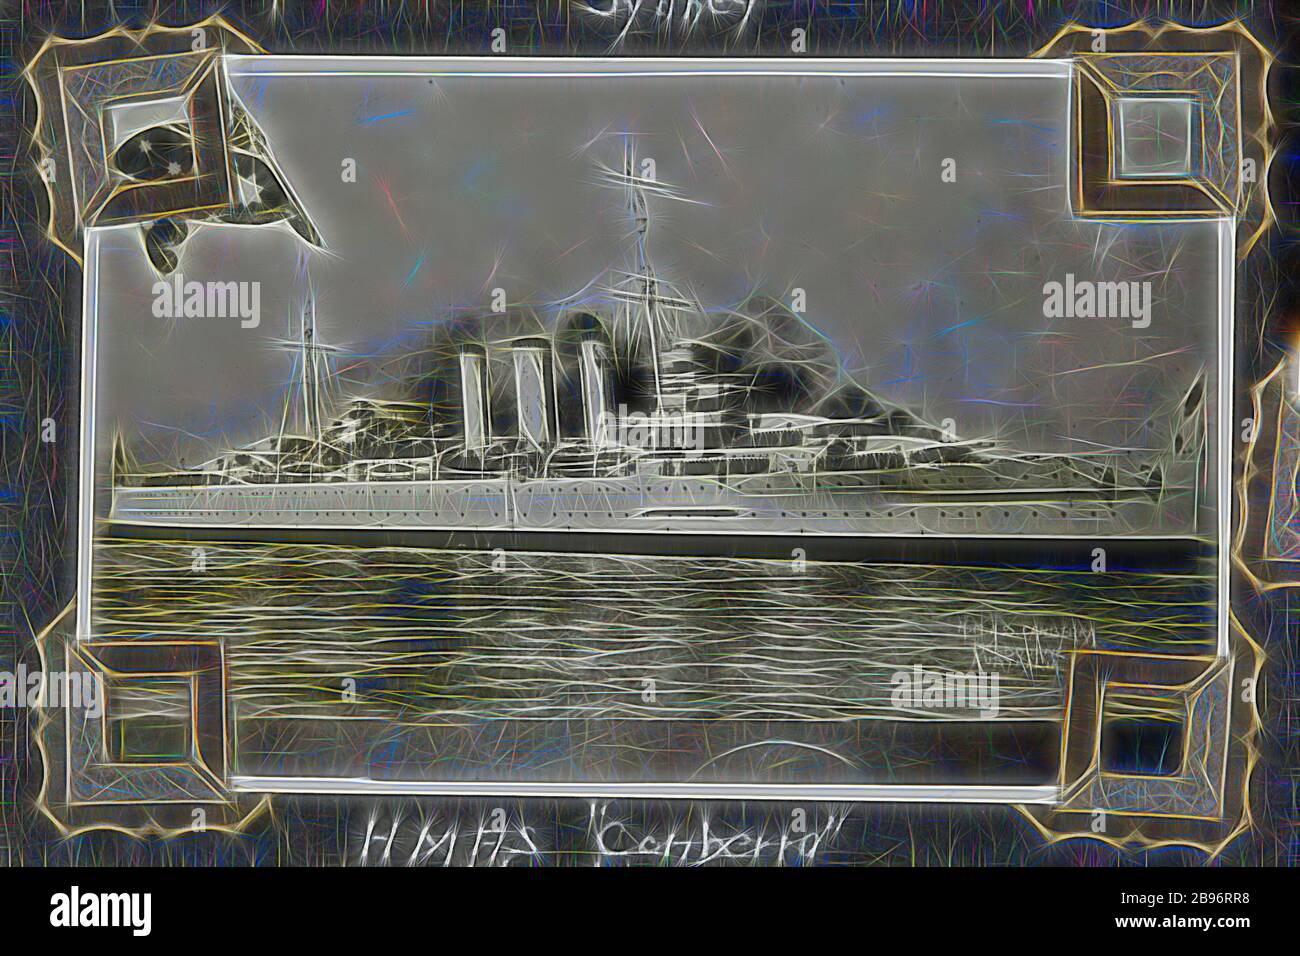 Fotografia - 'HMAS Canberra Flagship' 1937-1939, fotografia in bianco e nero della nave navale, H.M.A.S Canberra nel porto di Melbourne. Una delle 48 fotografie di un album fotografico. Preso da D.R.Goodwin, Royal Australian Navy (R.A. n.) 1937-1939. Le immagini sono di H.M.A.S Cerberus e di altre navi navali, addestramento navale e personale di armi da campo., Reimagined da Gibon, disegno di calore allegro di luminosità e raggi di luce radianza. Arte classica reinventata con un tocco moderno. La fotografia ispirata al futurismo, che abbraccia l'energia dinamica della tecnologia moderna, del movimento, della velocità e rivoluziona la cultura. Foto Stock